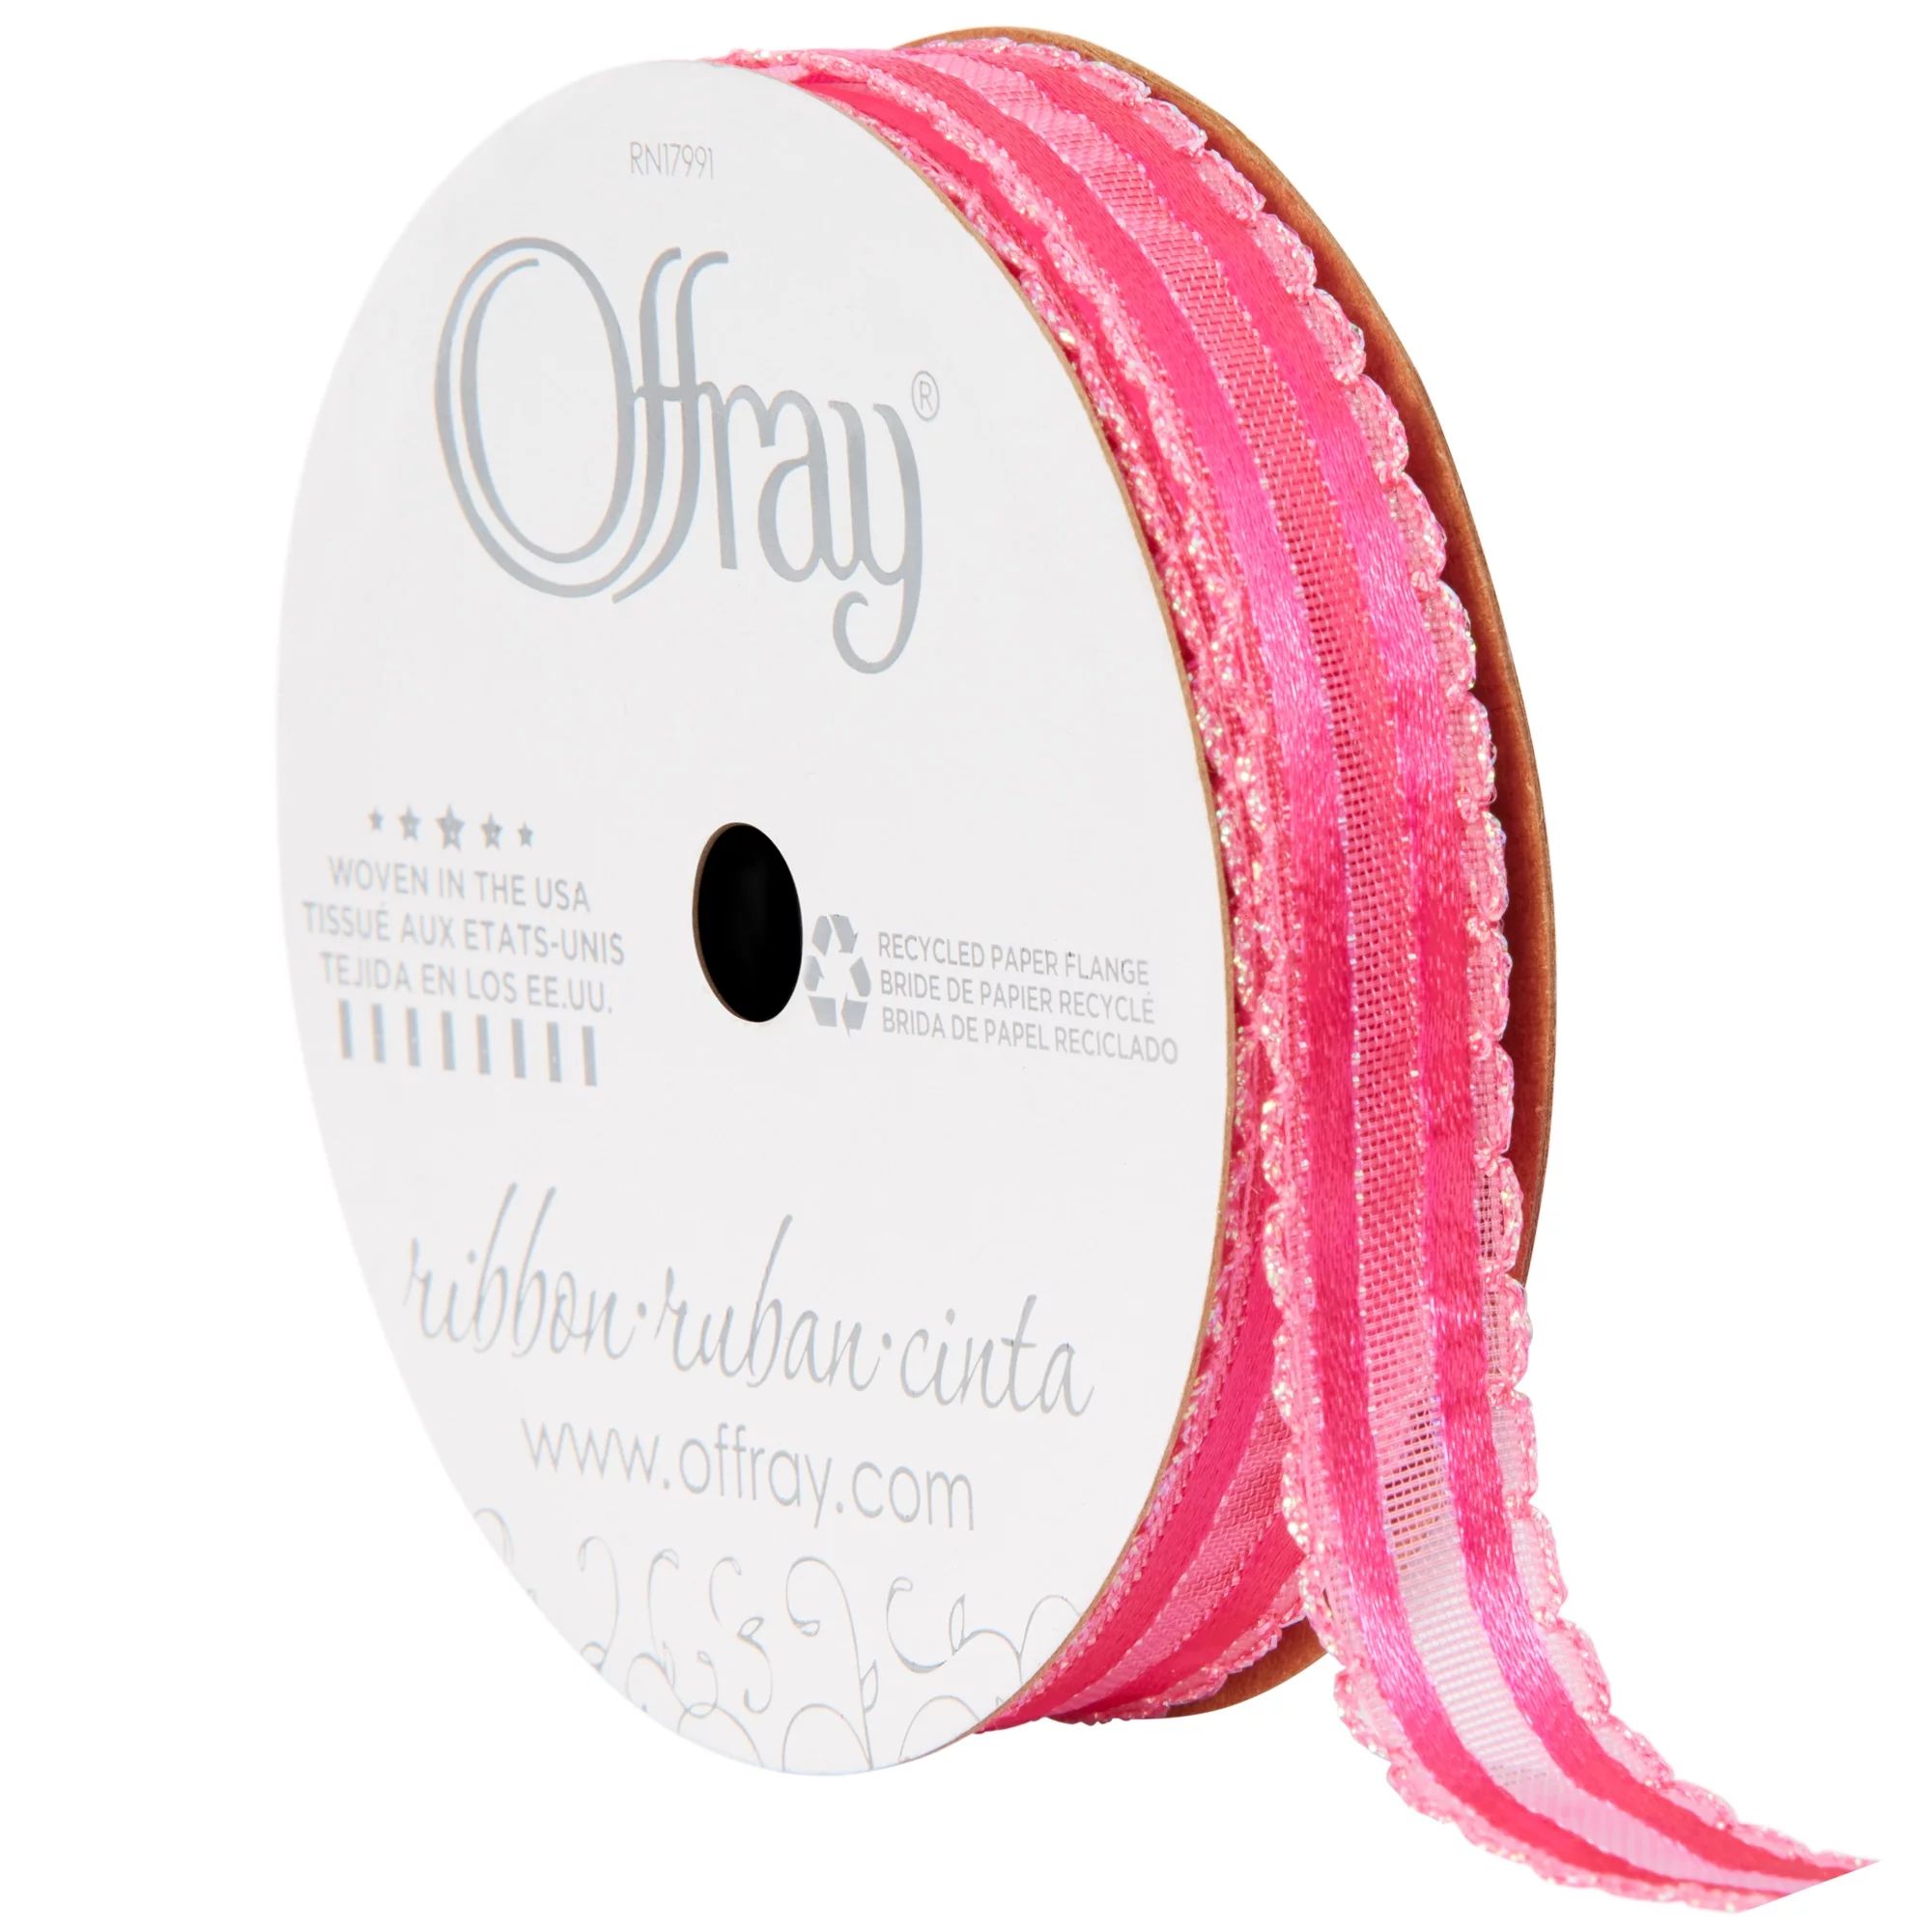 Offray Ribbon, Hot Pink 5/8 inch Sheer Ribbon, 9 feet | Walmart (US)